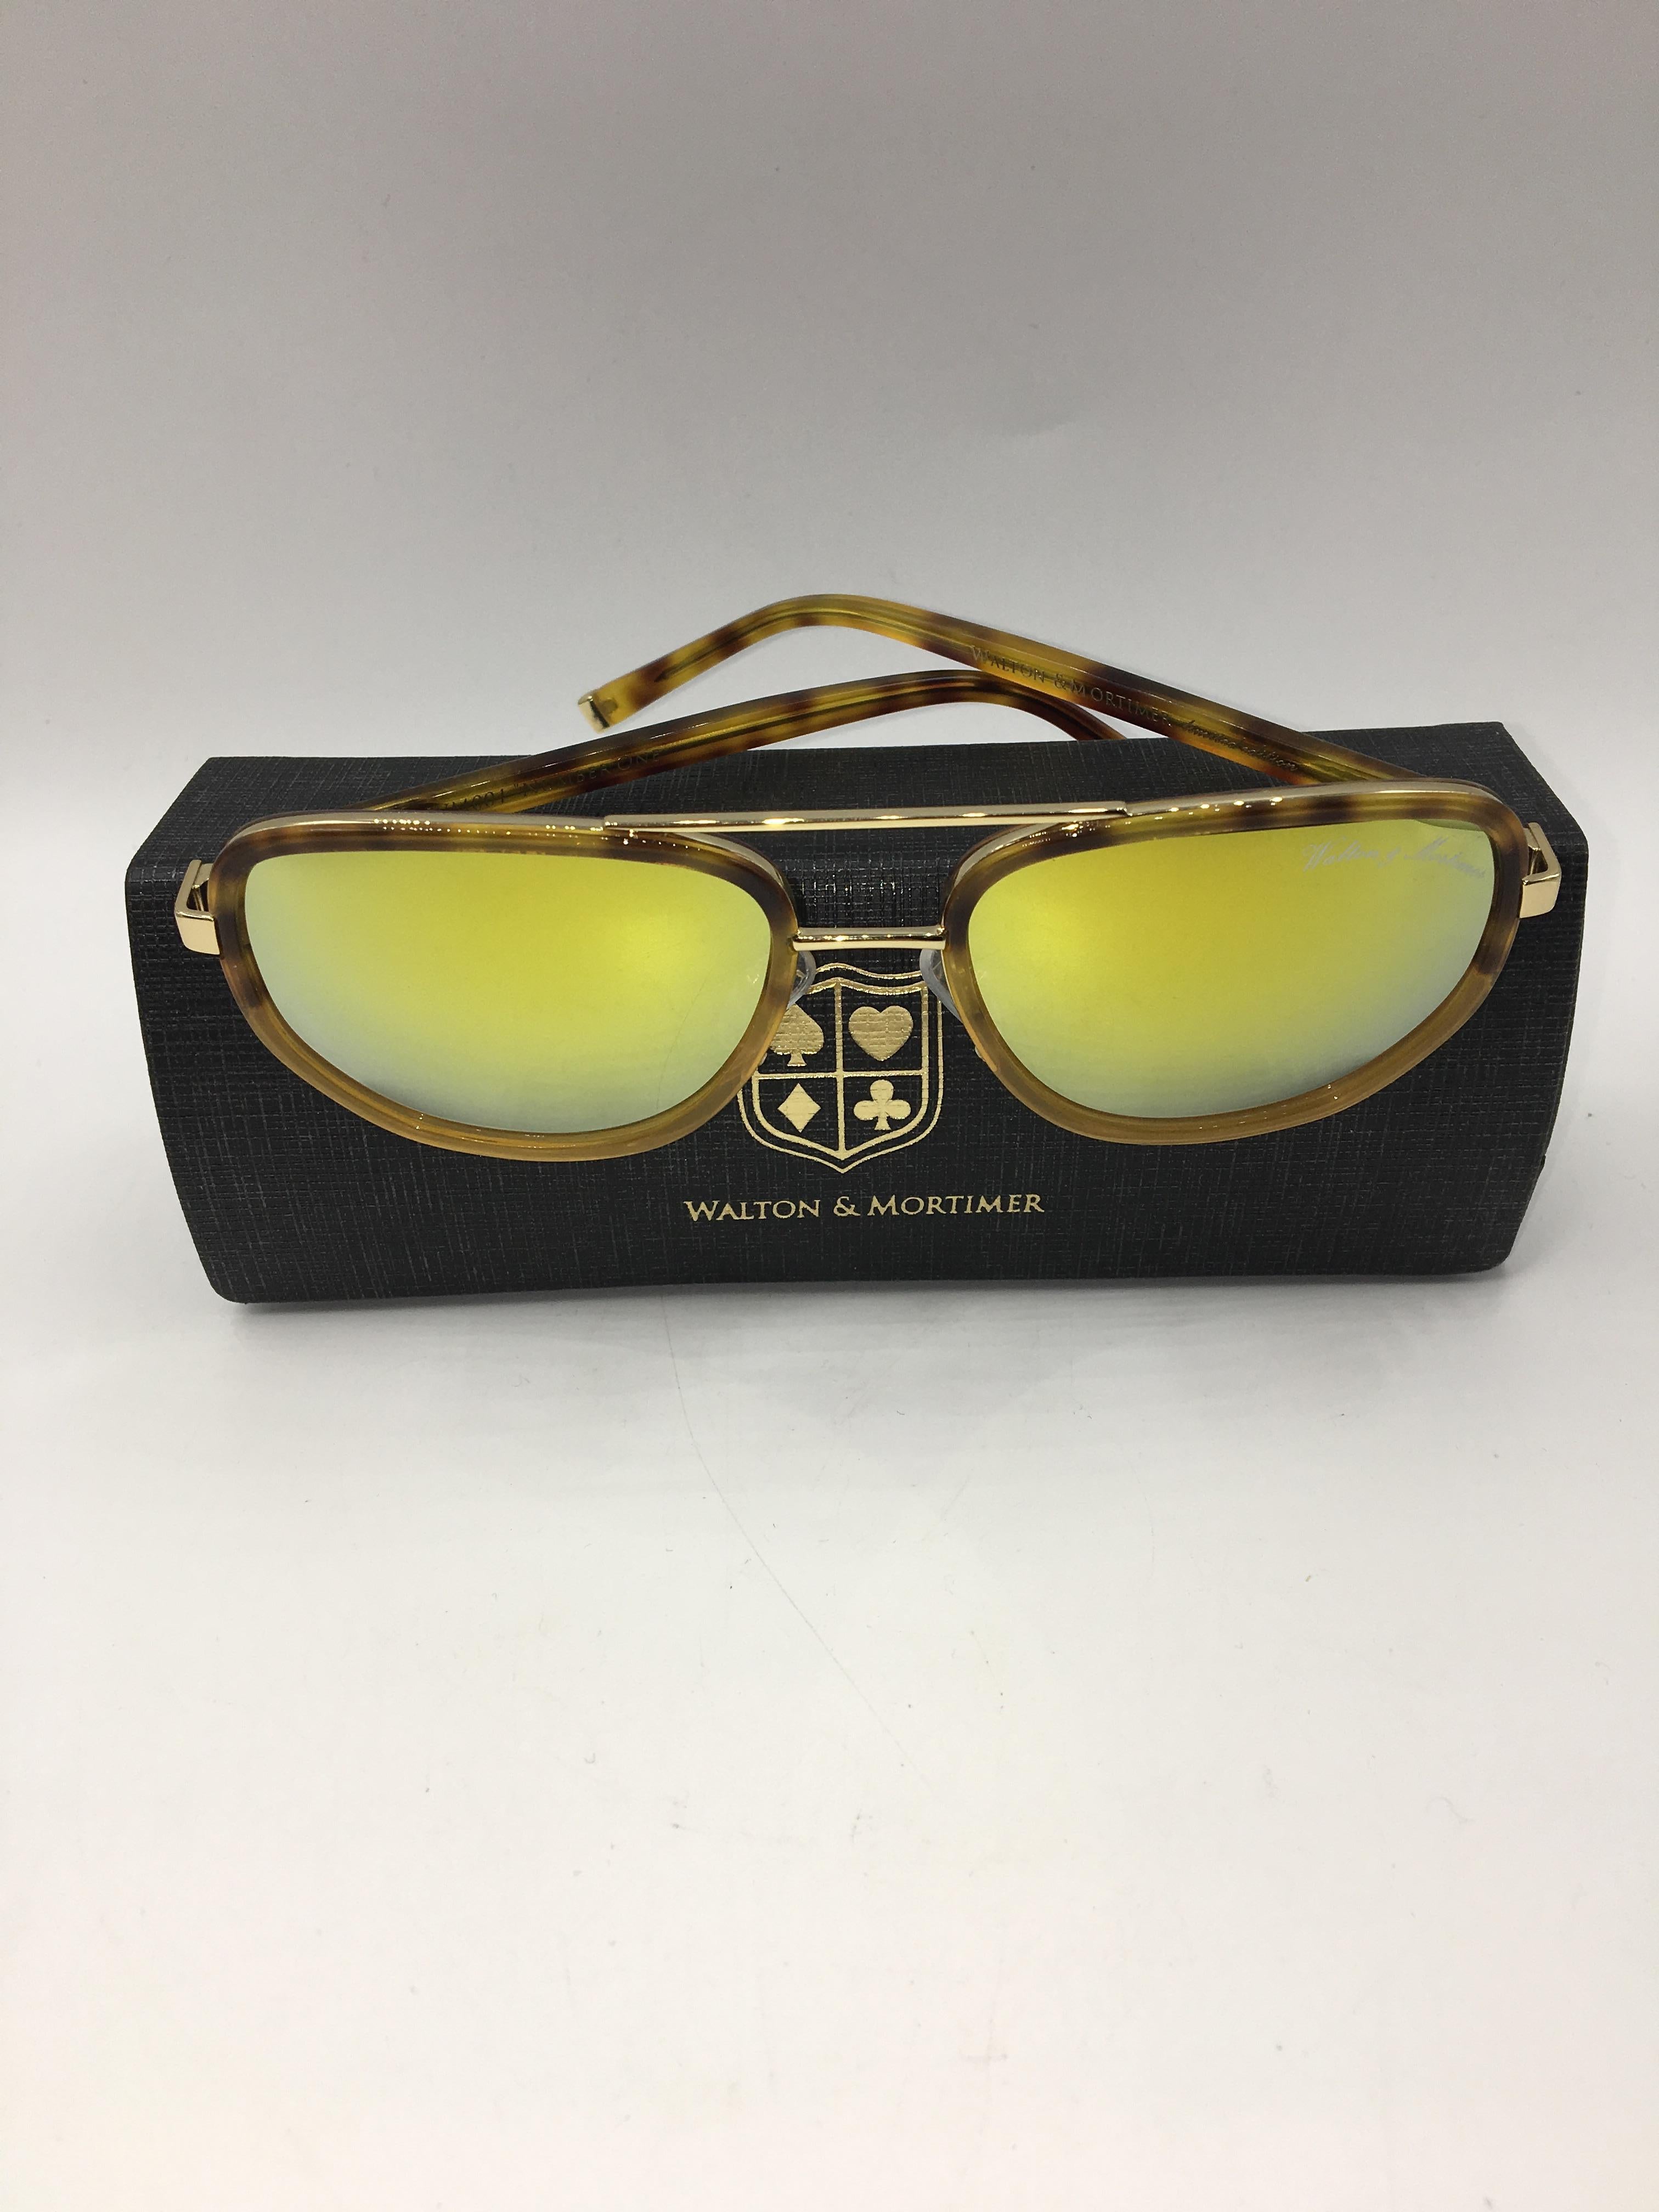 Walton & Mortimer White Sunglasses With gold lenses & gold details.
only 99 units made 
Limited Black box with gold lock.
Cloth with Walton & Mortimer logo
Frame Color Havana
Lens Color: Gold   (100% UV400)